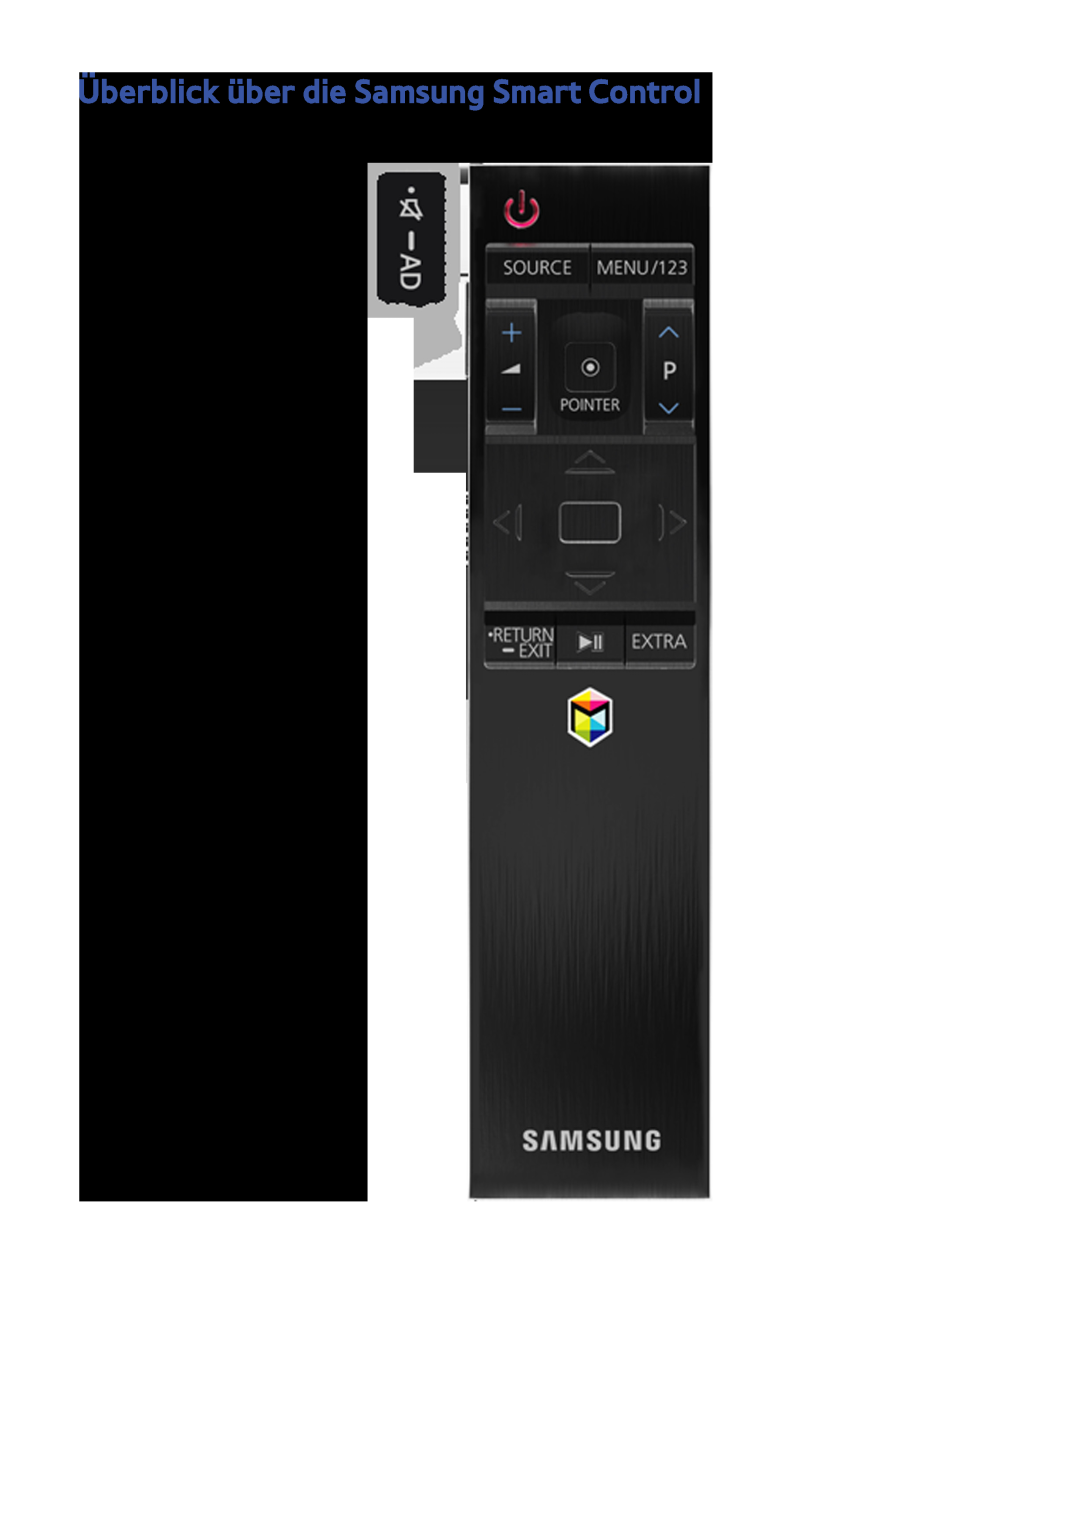 Samsung UE55JU6435UXZG, UE40JU6495UXZG, UE48JU6495UXZG, UE48JU6490UXZG, UE40S9ASXXH Überblick über die Samsung Smart Control 